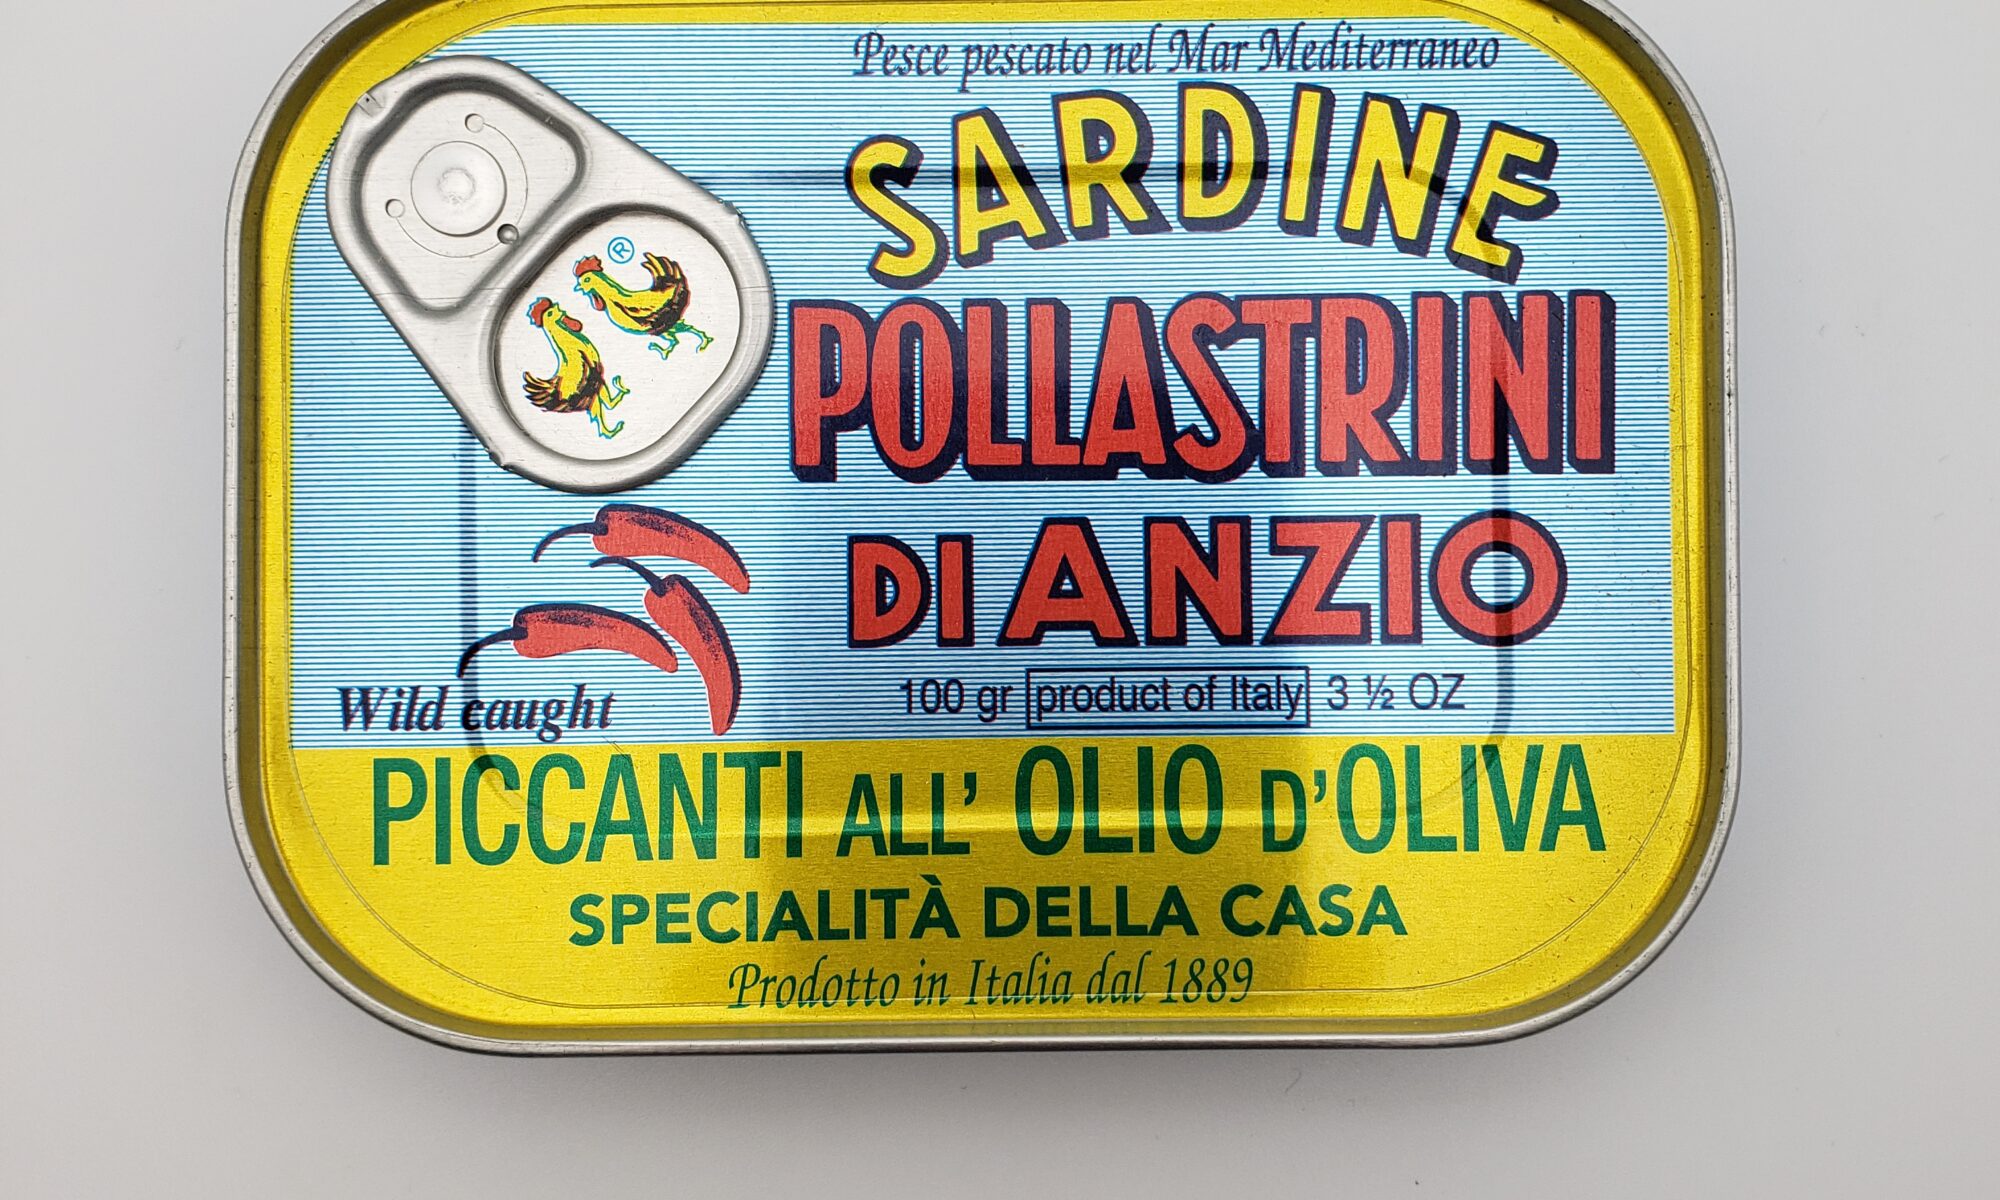 Image of Pollastrini di Anzio Spiced Sardines tin